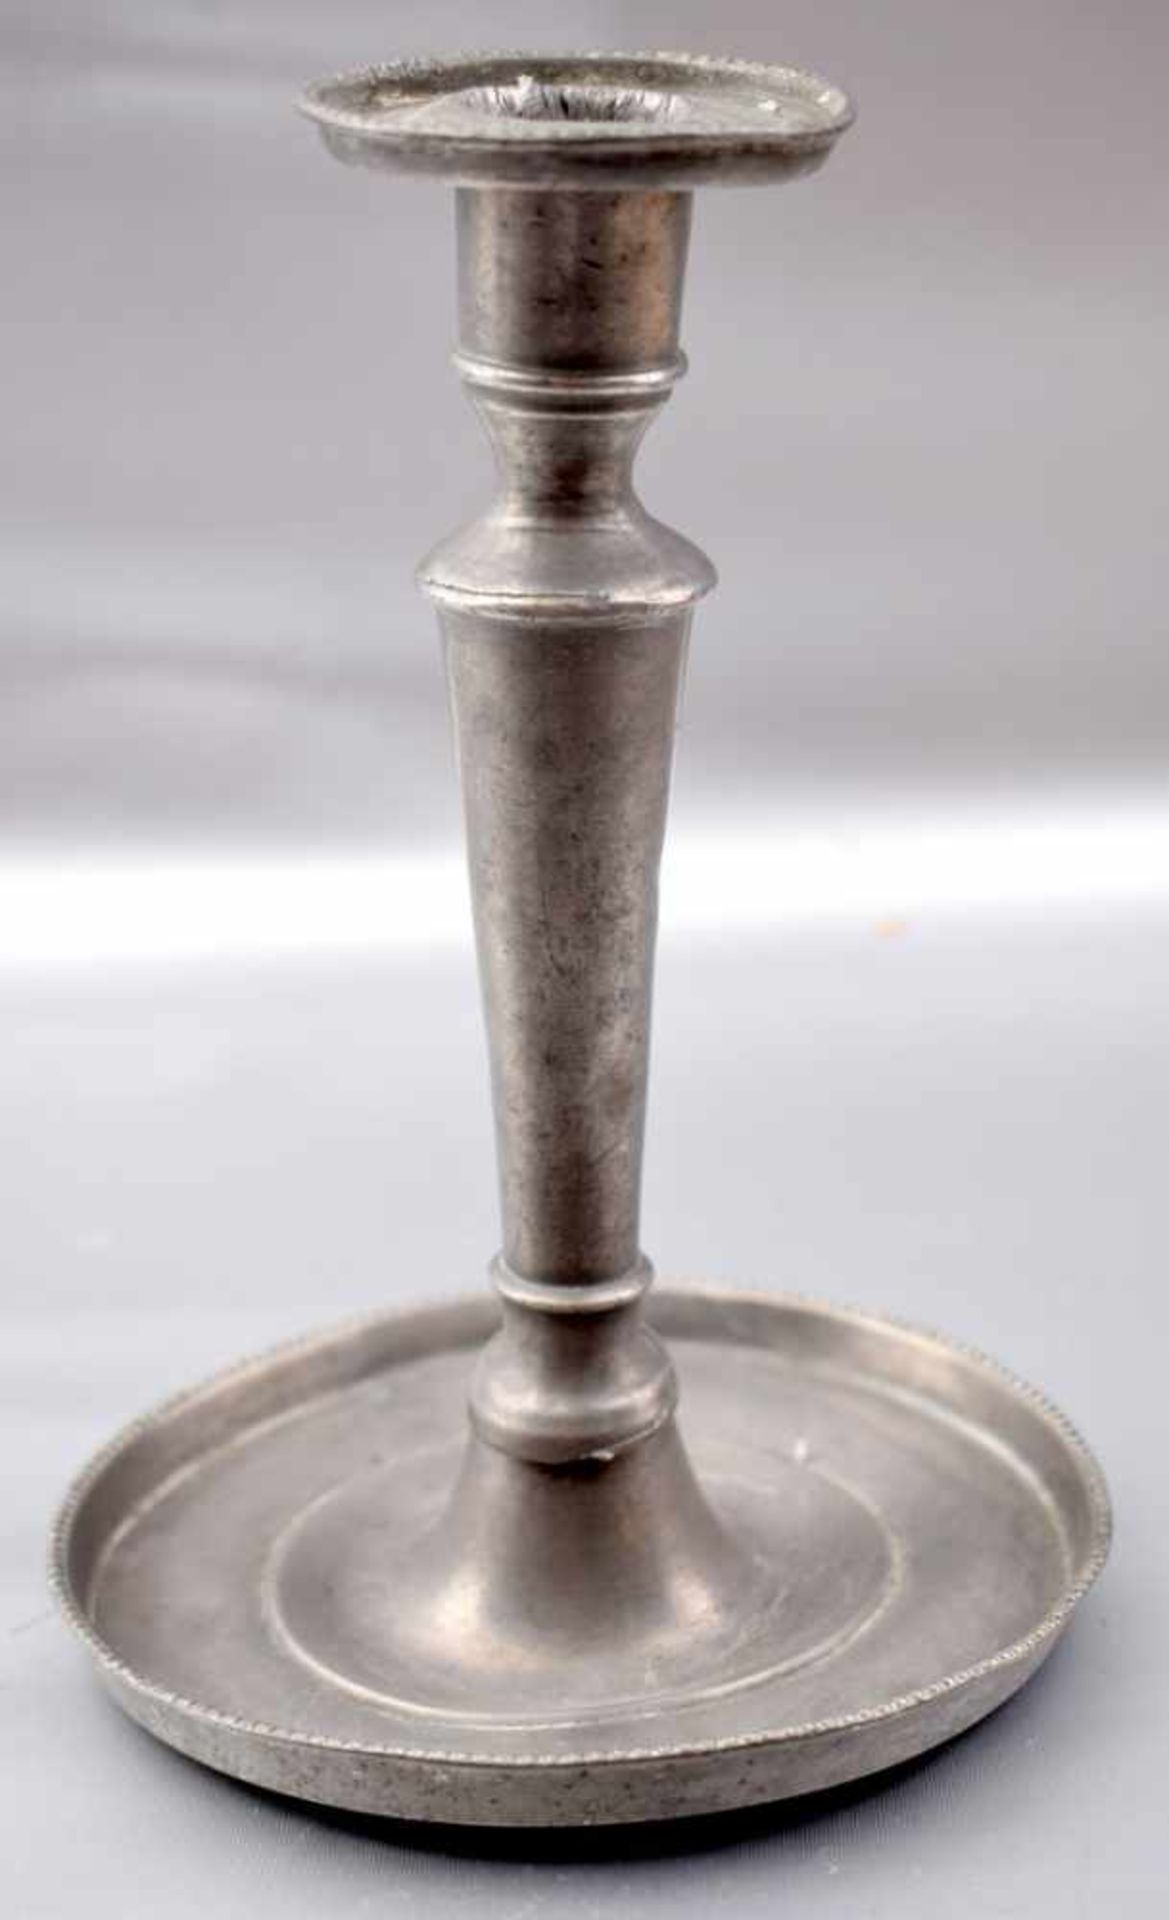 Tischkerzenleuchter 1-lichtig, runder Fuß mit Schale, runder Schaft, H 18 cm, 1. Hälfte 19. Jh.